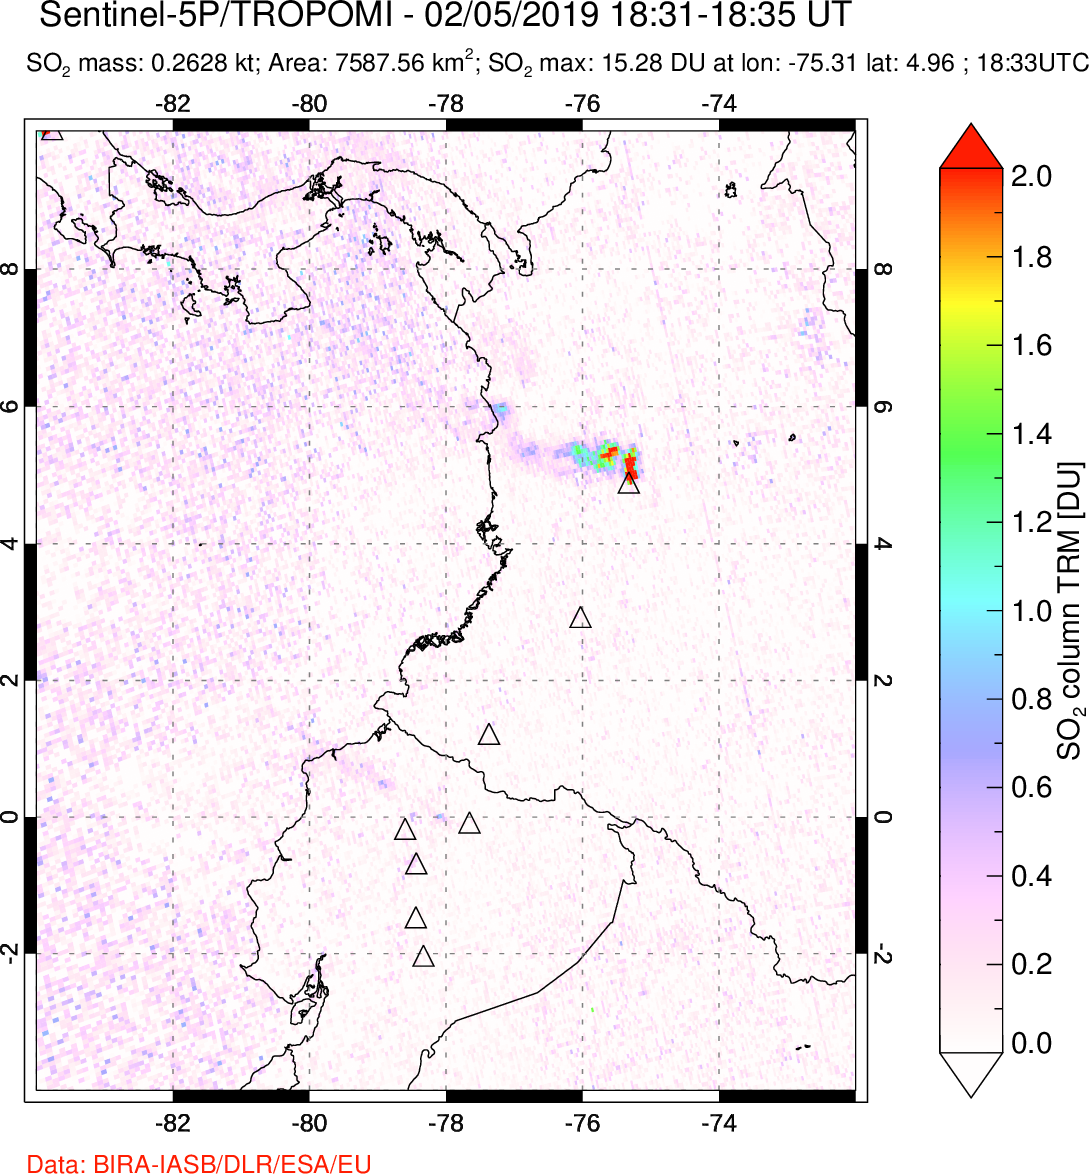 A sulfur dioxide image over Ecuador on Feb 05, 2019.